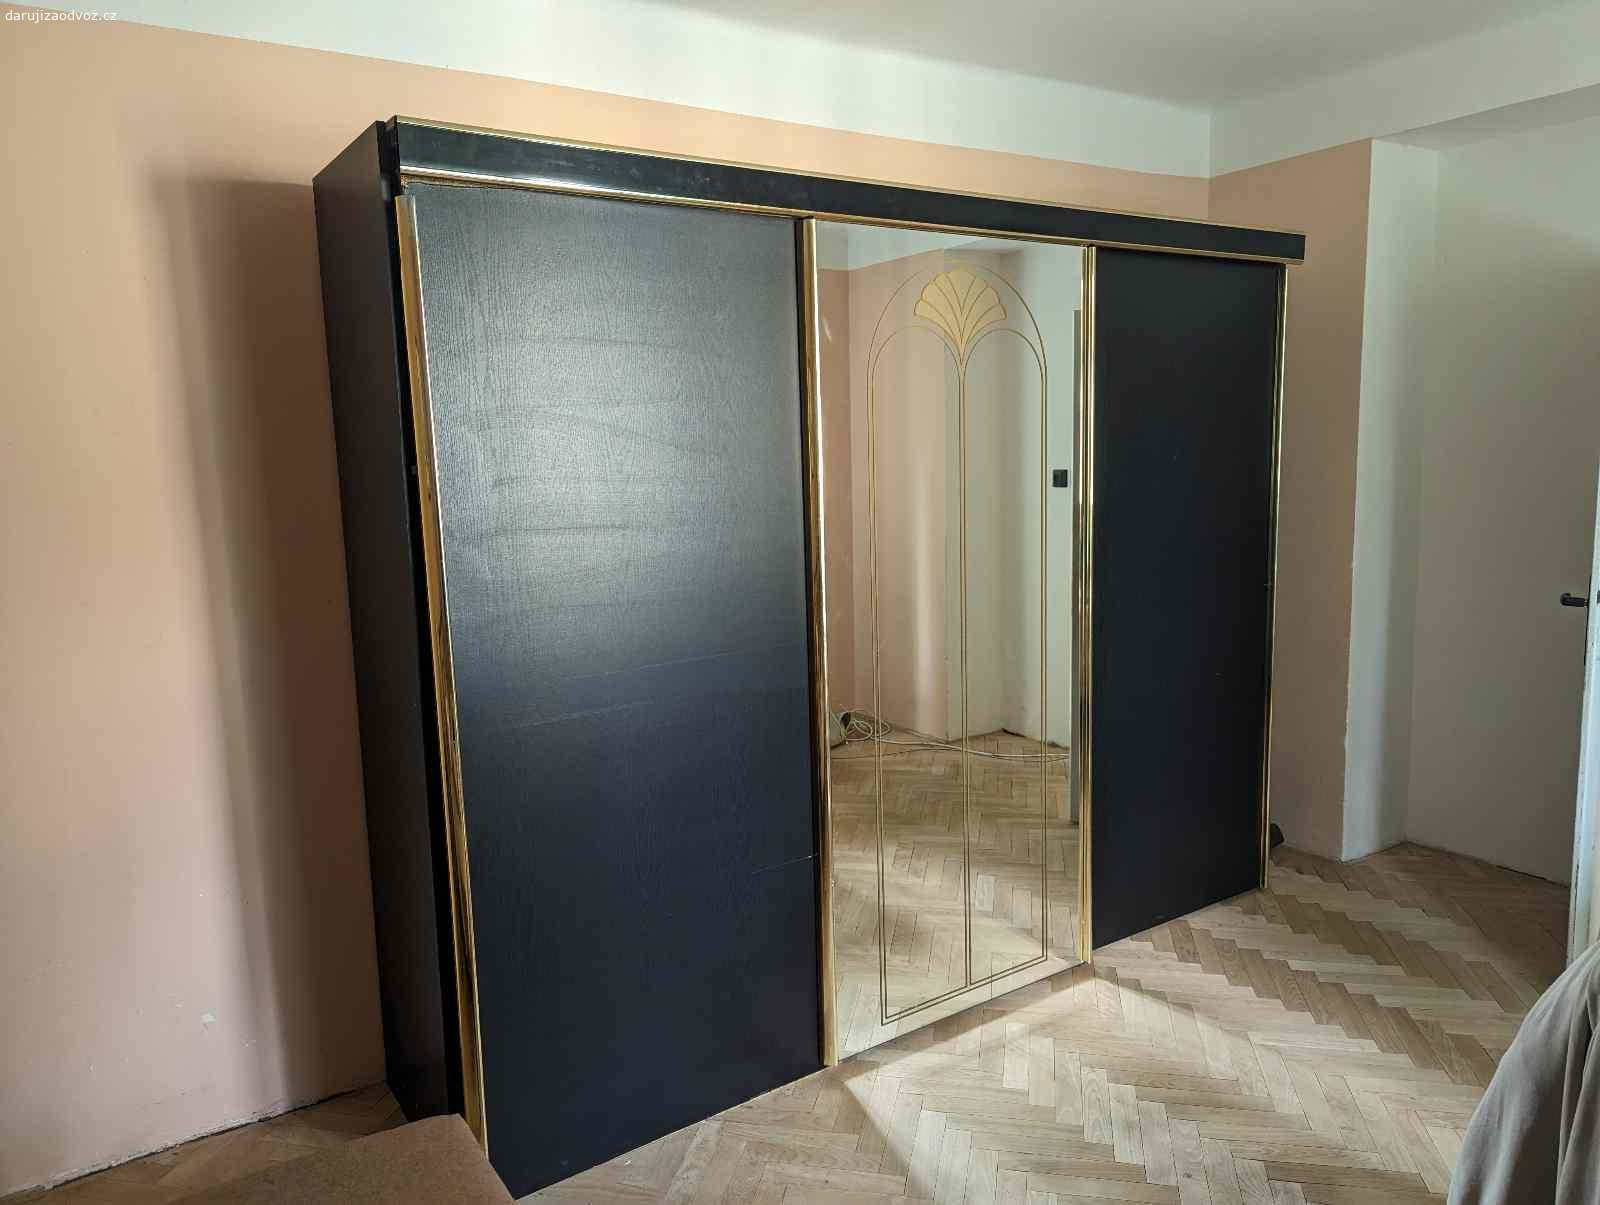 Skříň za odvoz. Šatní skříň s posuvnými dveřmi a zrcadlem. Levé dveře jsou poškozené - závěsné úchyty do kolejniček pro posouvání jsou utržené. Rozměry (šířka x výška x hloubka) v cm: 276 x 213 x 60.